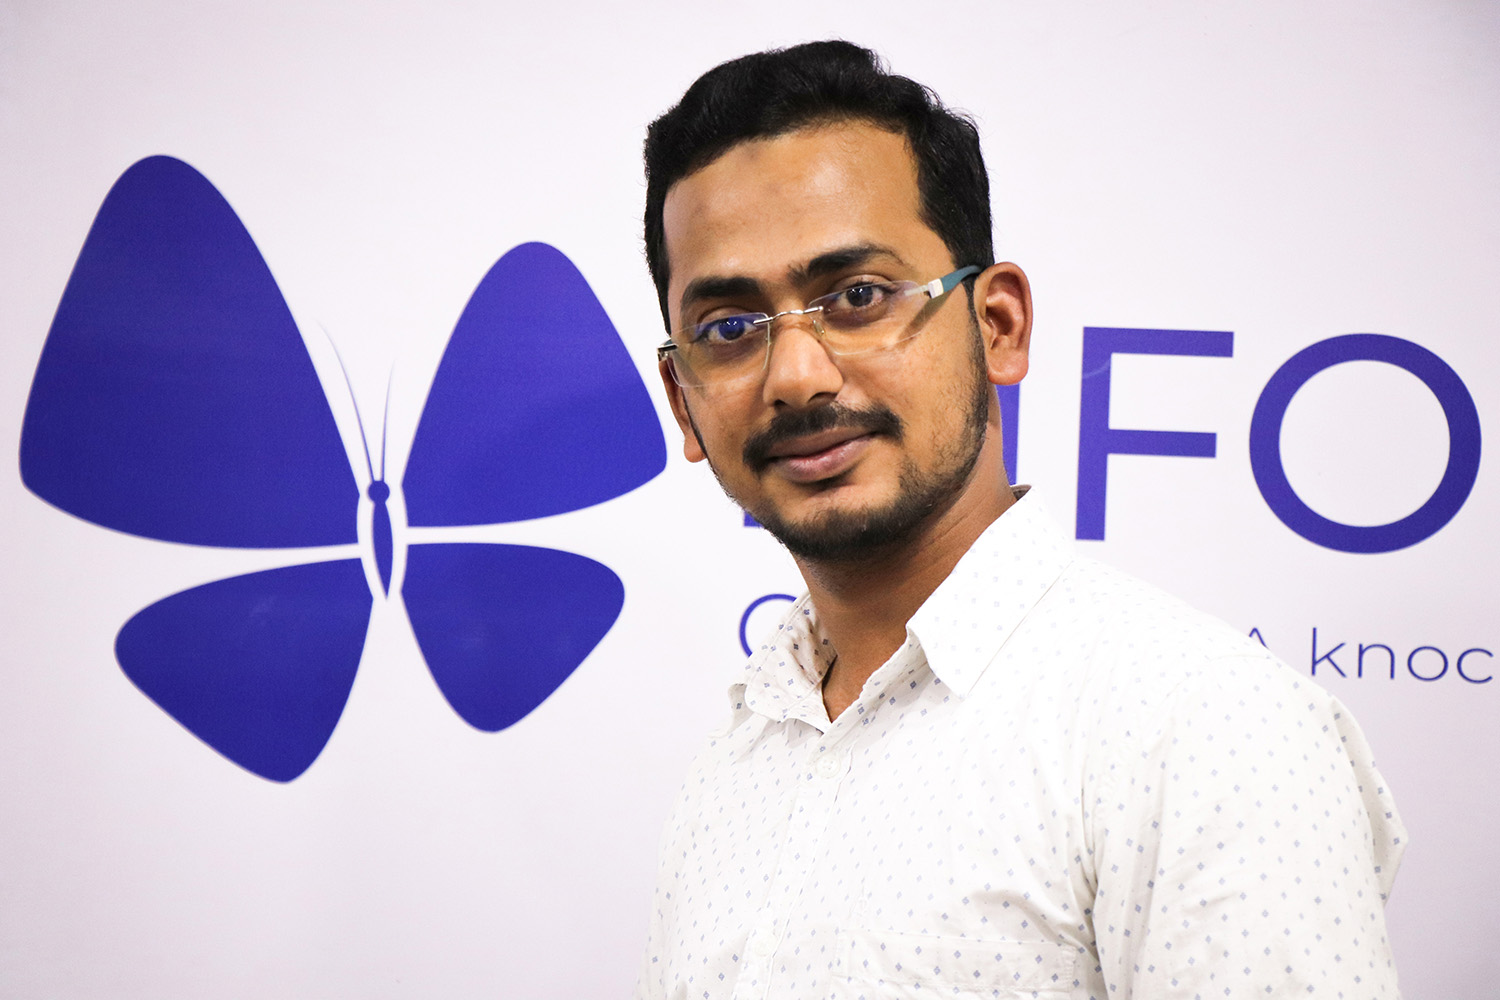 Infolks' founder and CEO Mujeeb Kolasseri